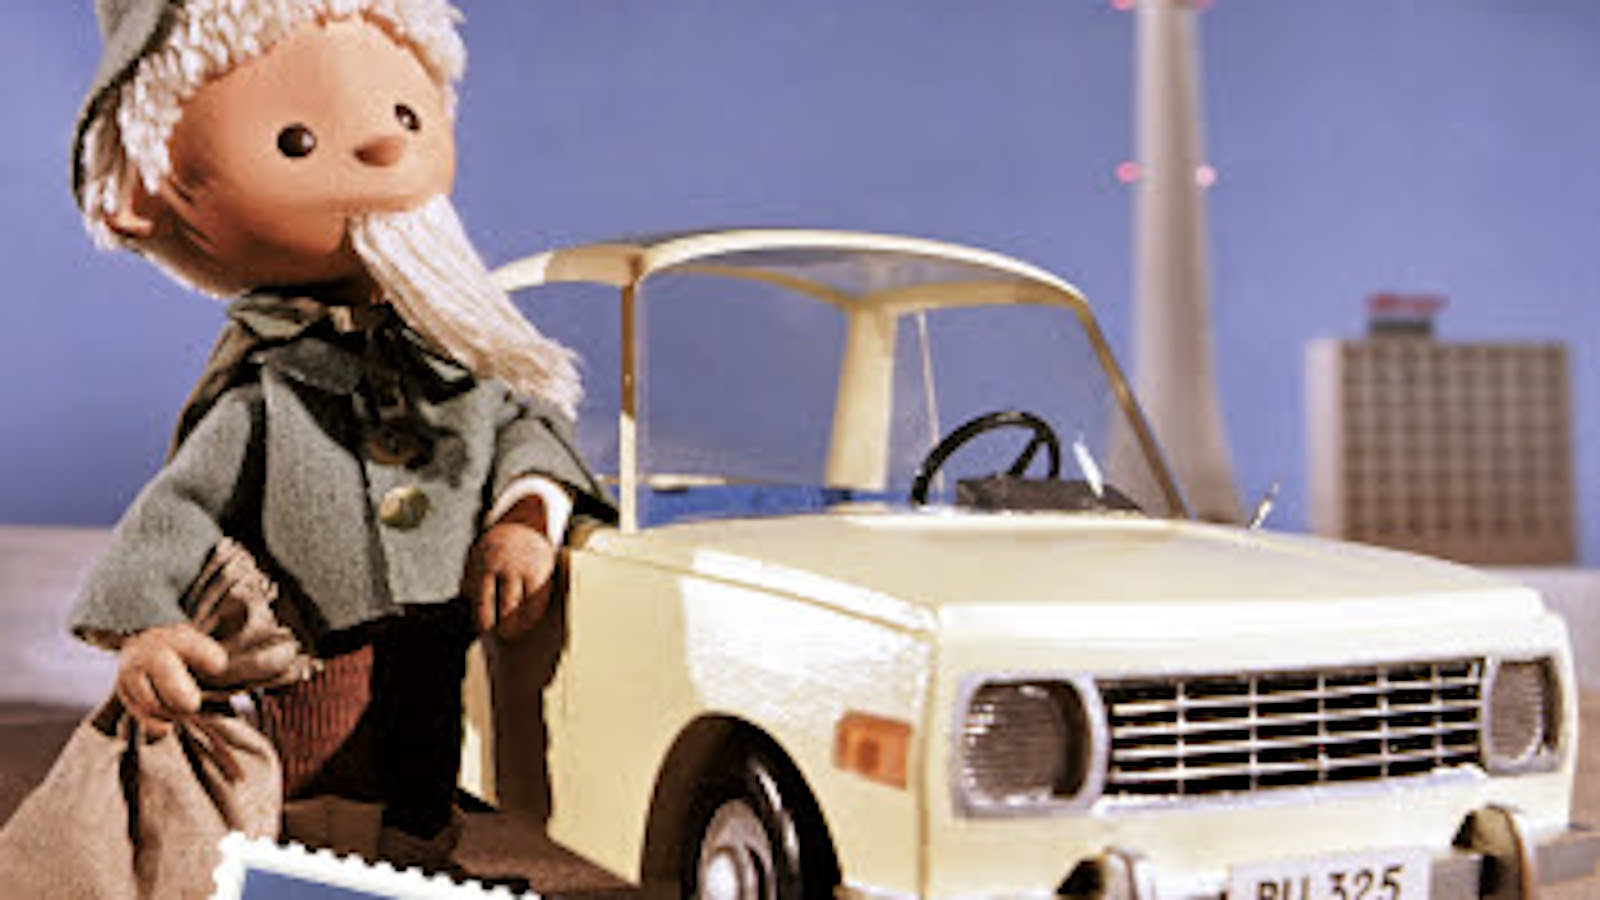 Kuvassa on Nukkumatti harmaassa takissa nojaamassa vaaleaan itäsaksalaisen Wartburg-auton vieressä.